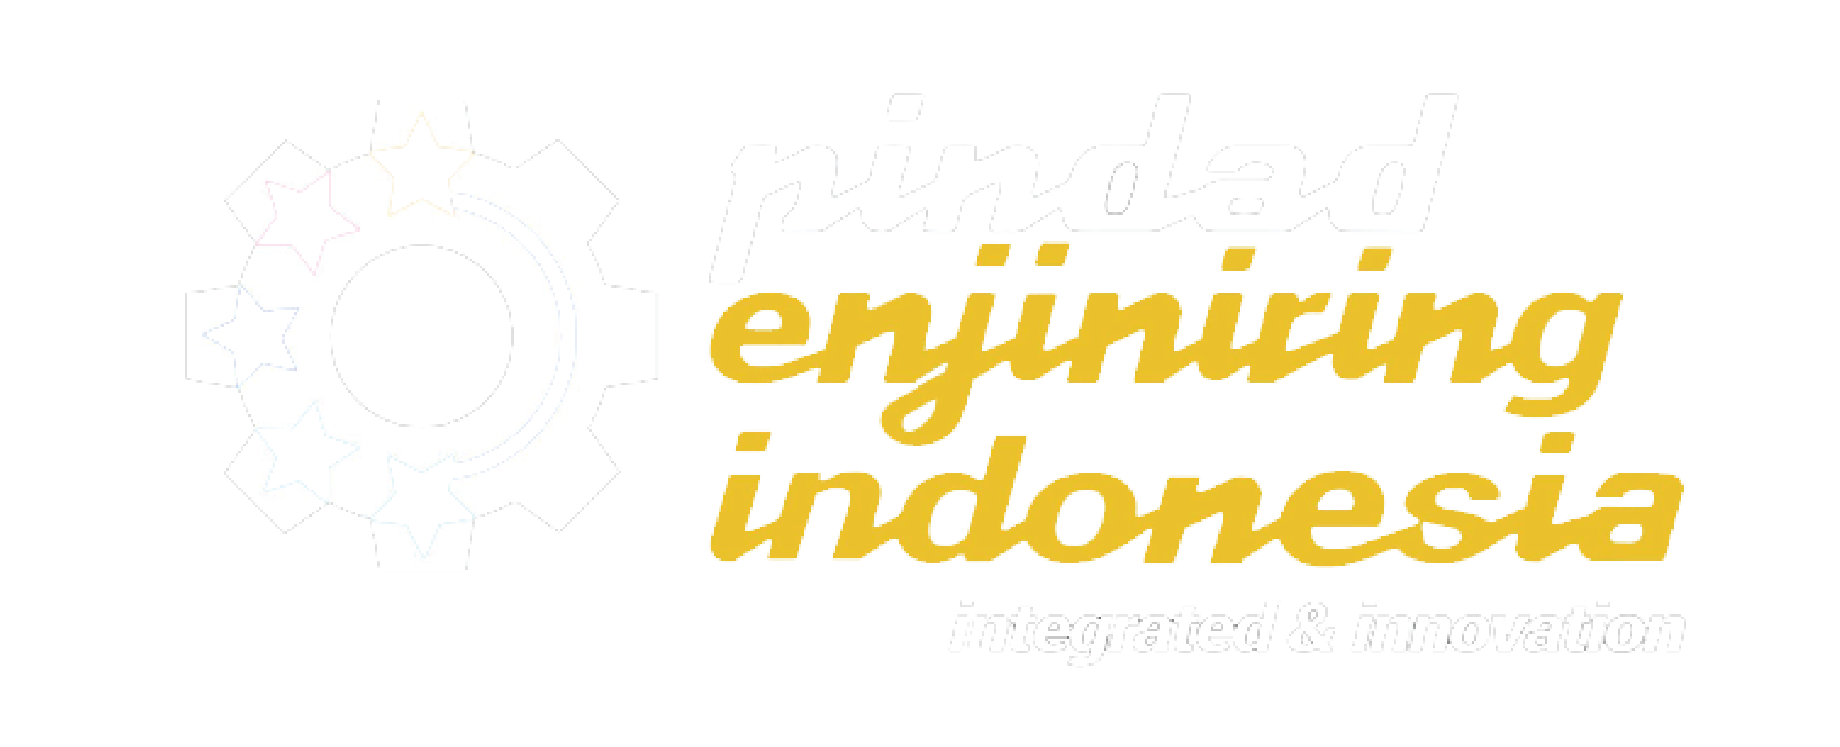 Pindad Enjiniring Indonesia